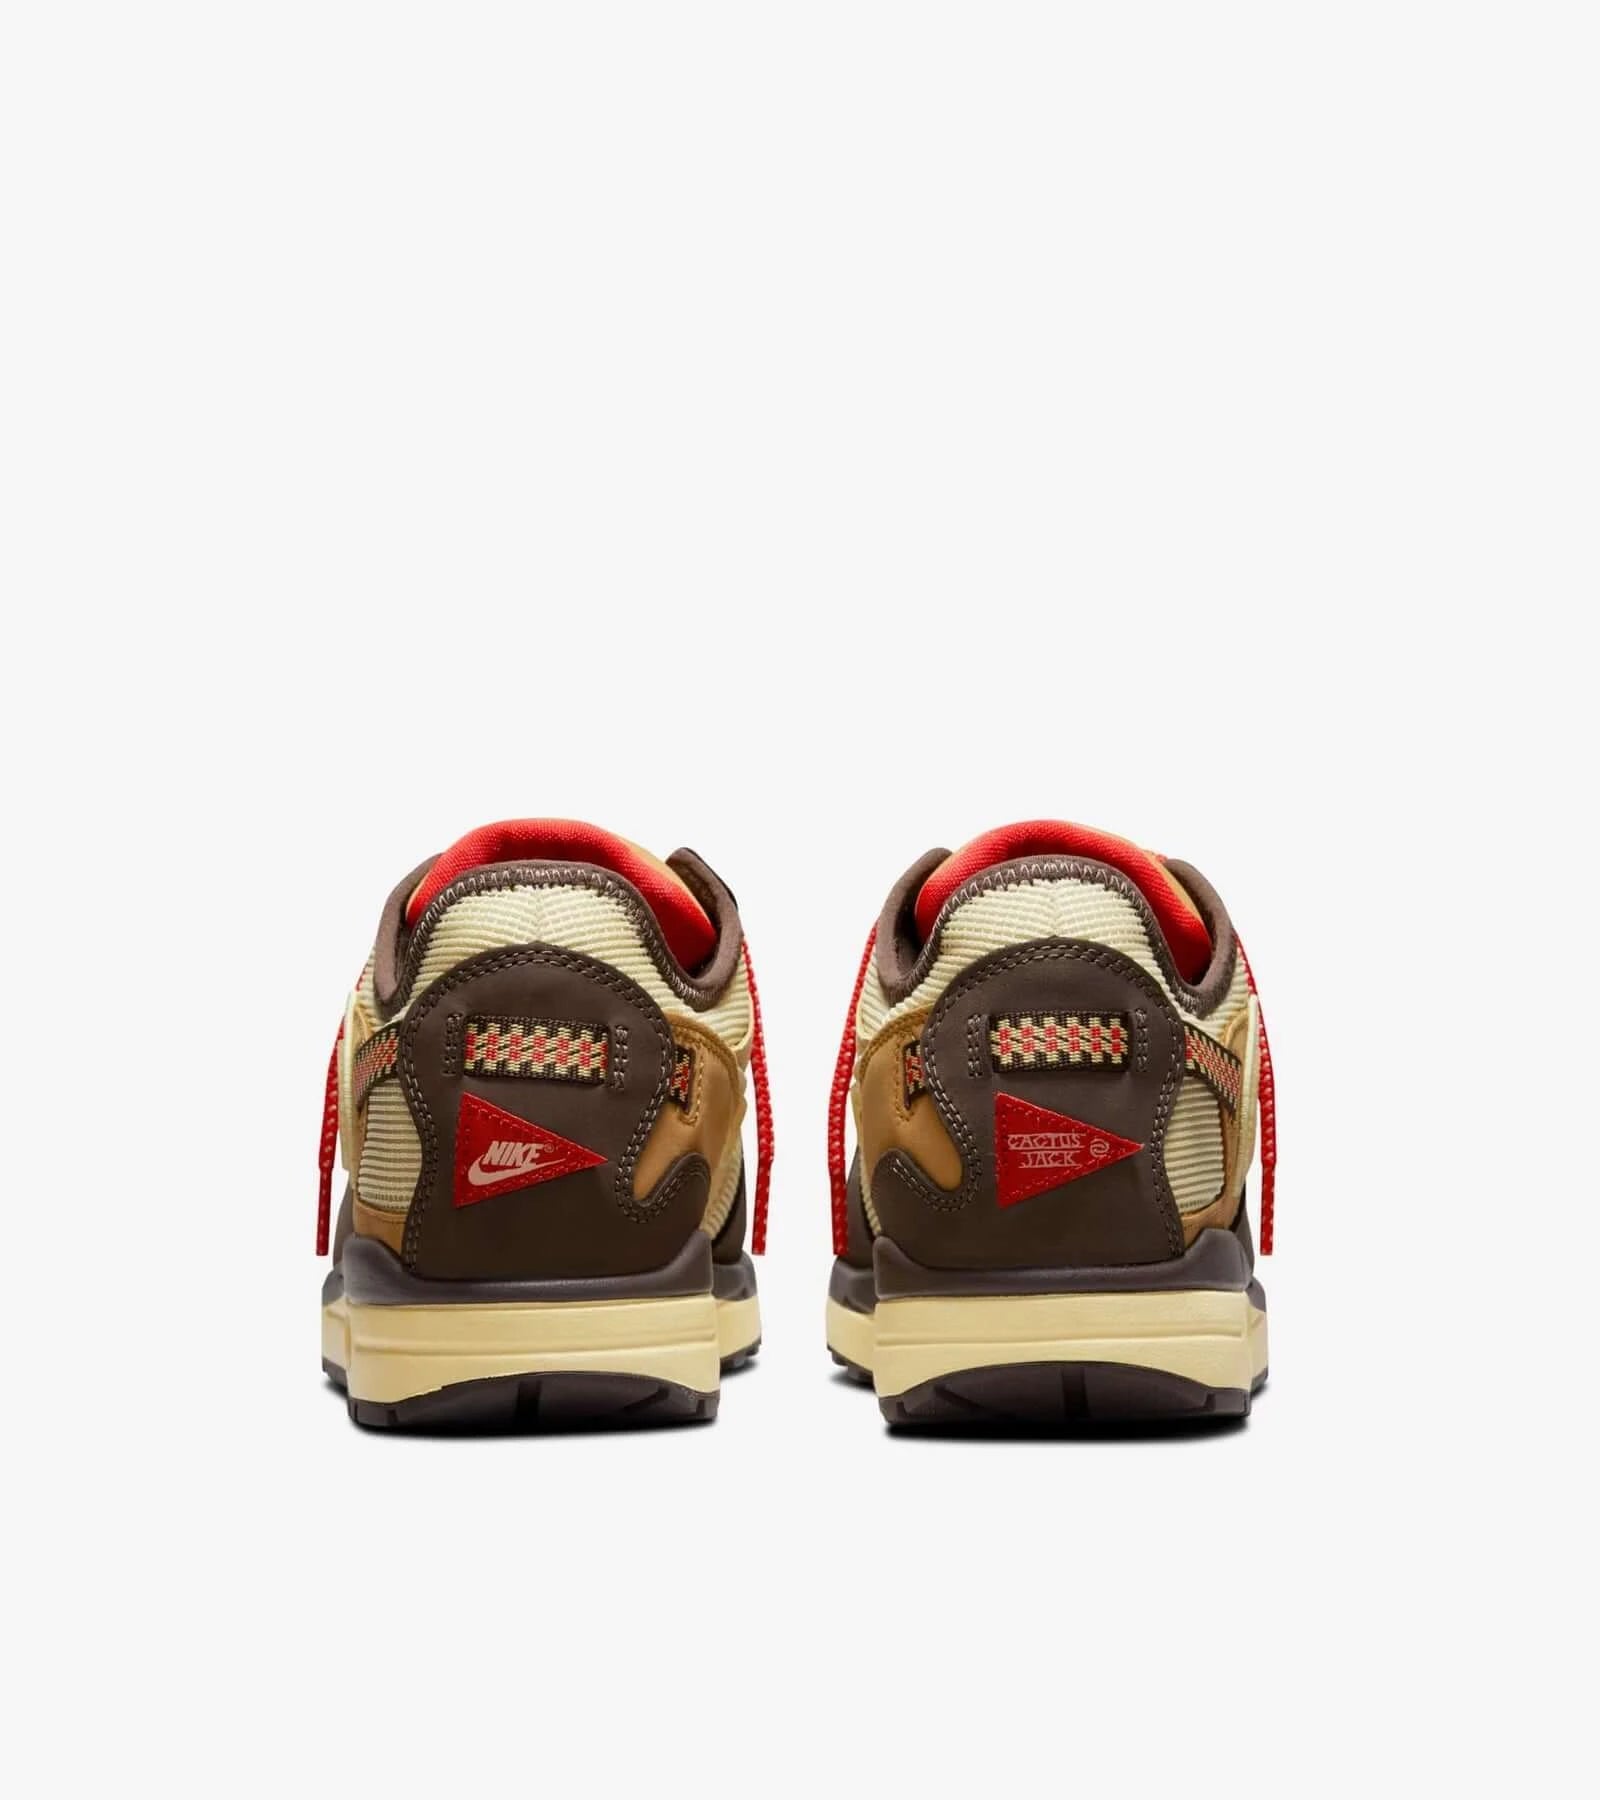 Travis Scott x Nike Air Max 1 “Baroque Brown”